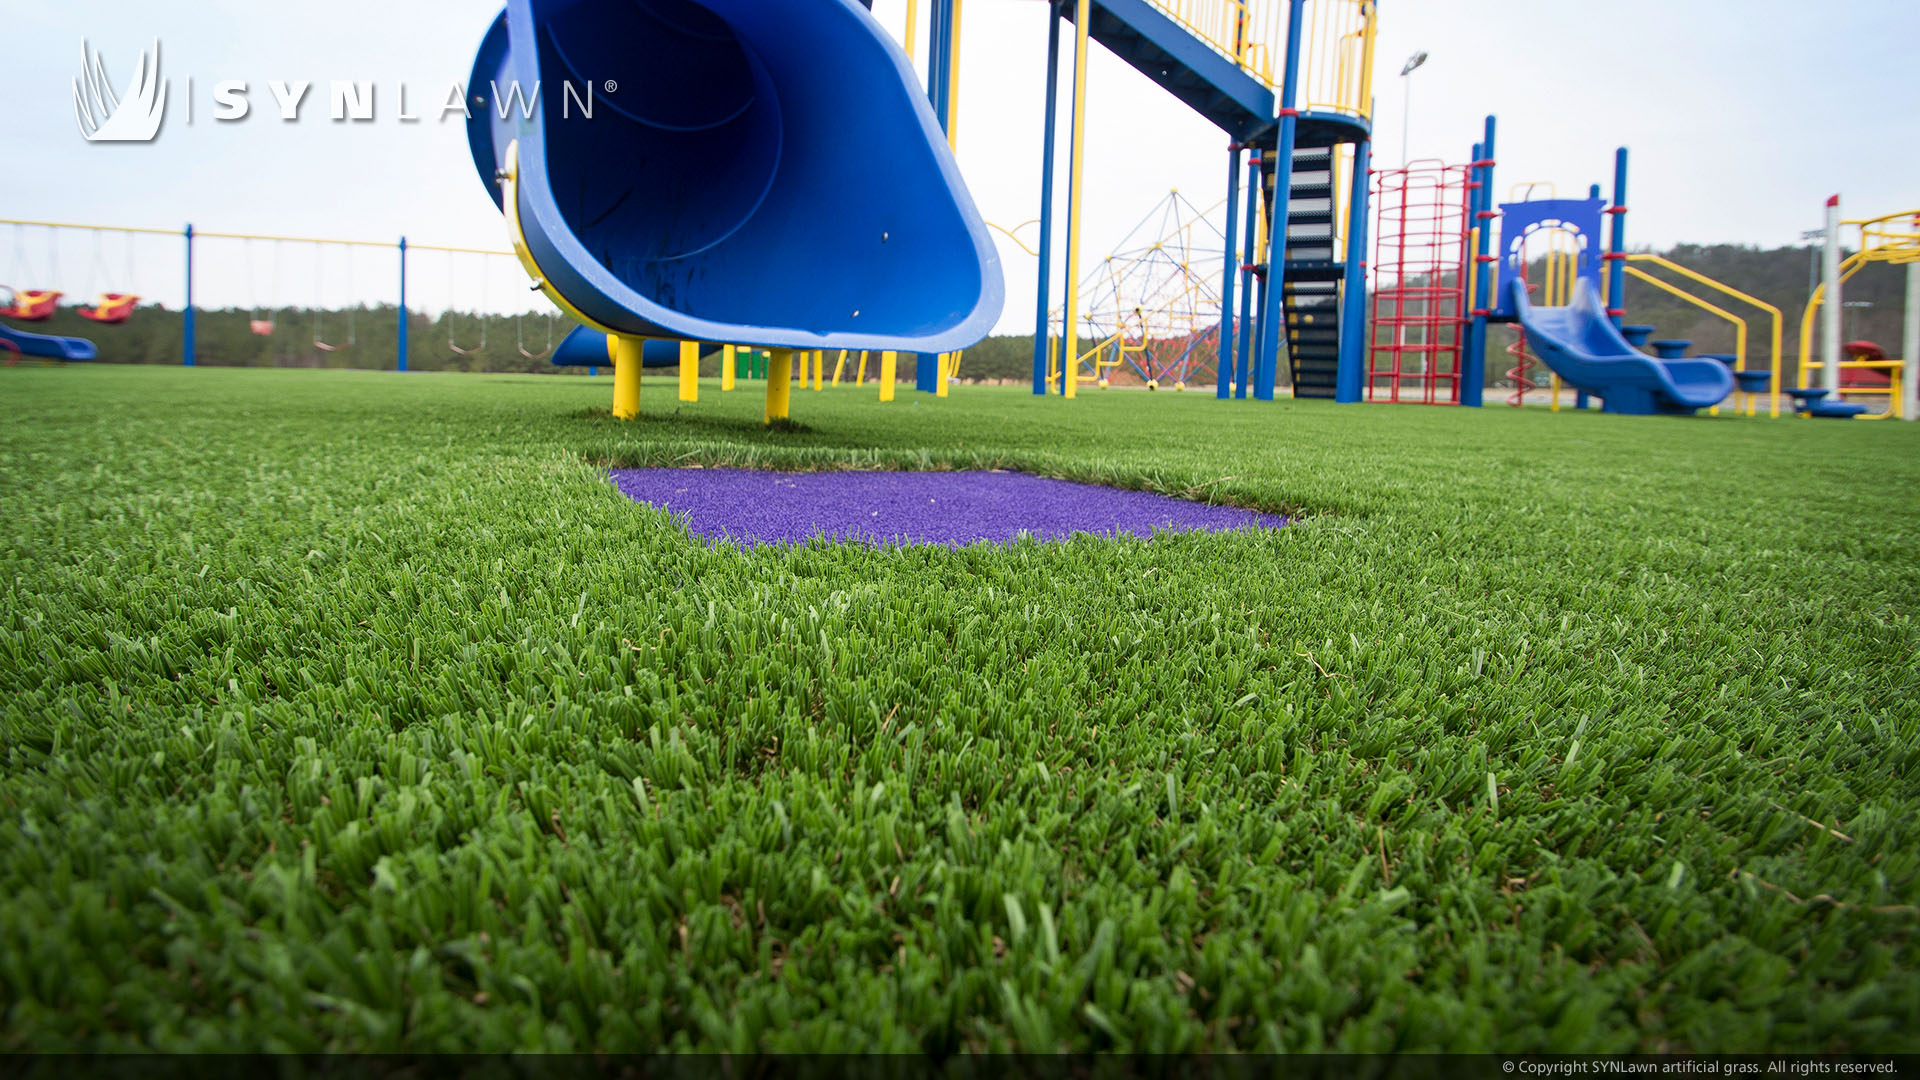 Blue slide on artificial grass